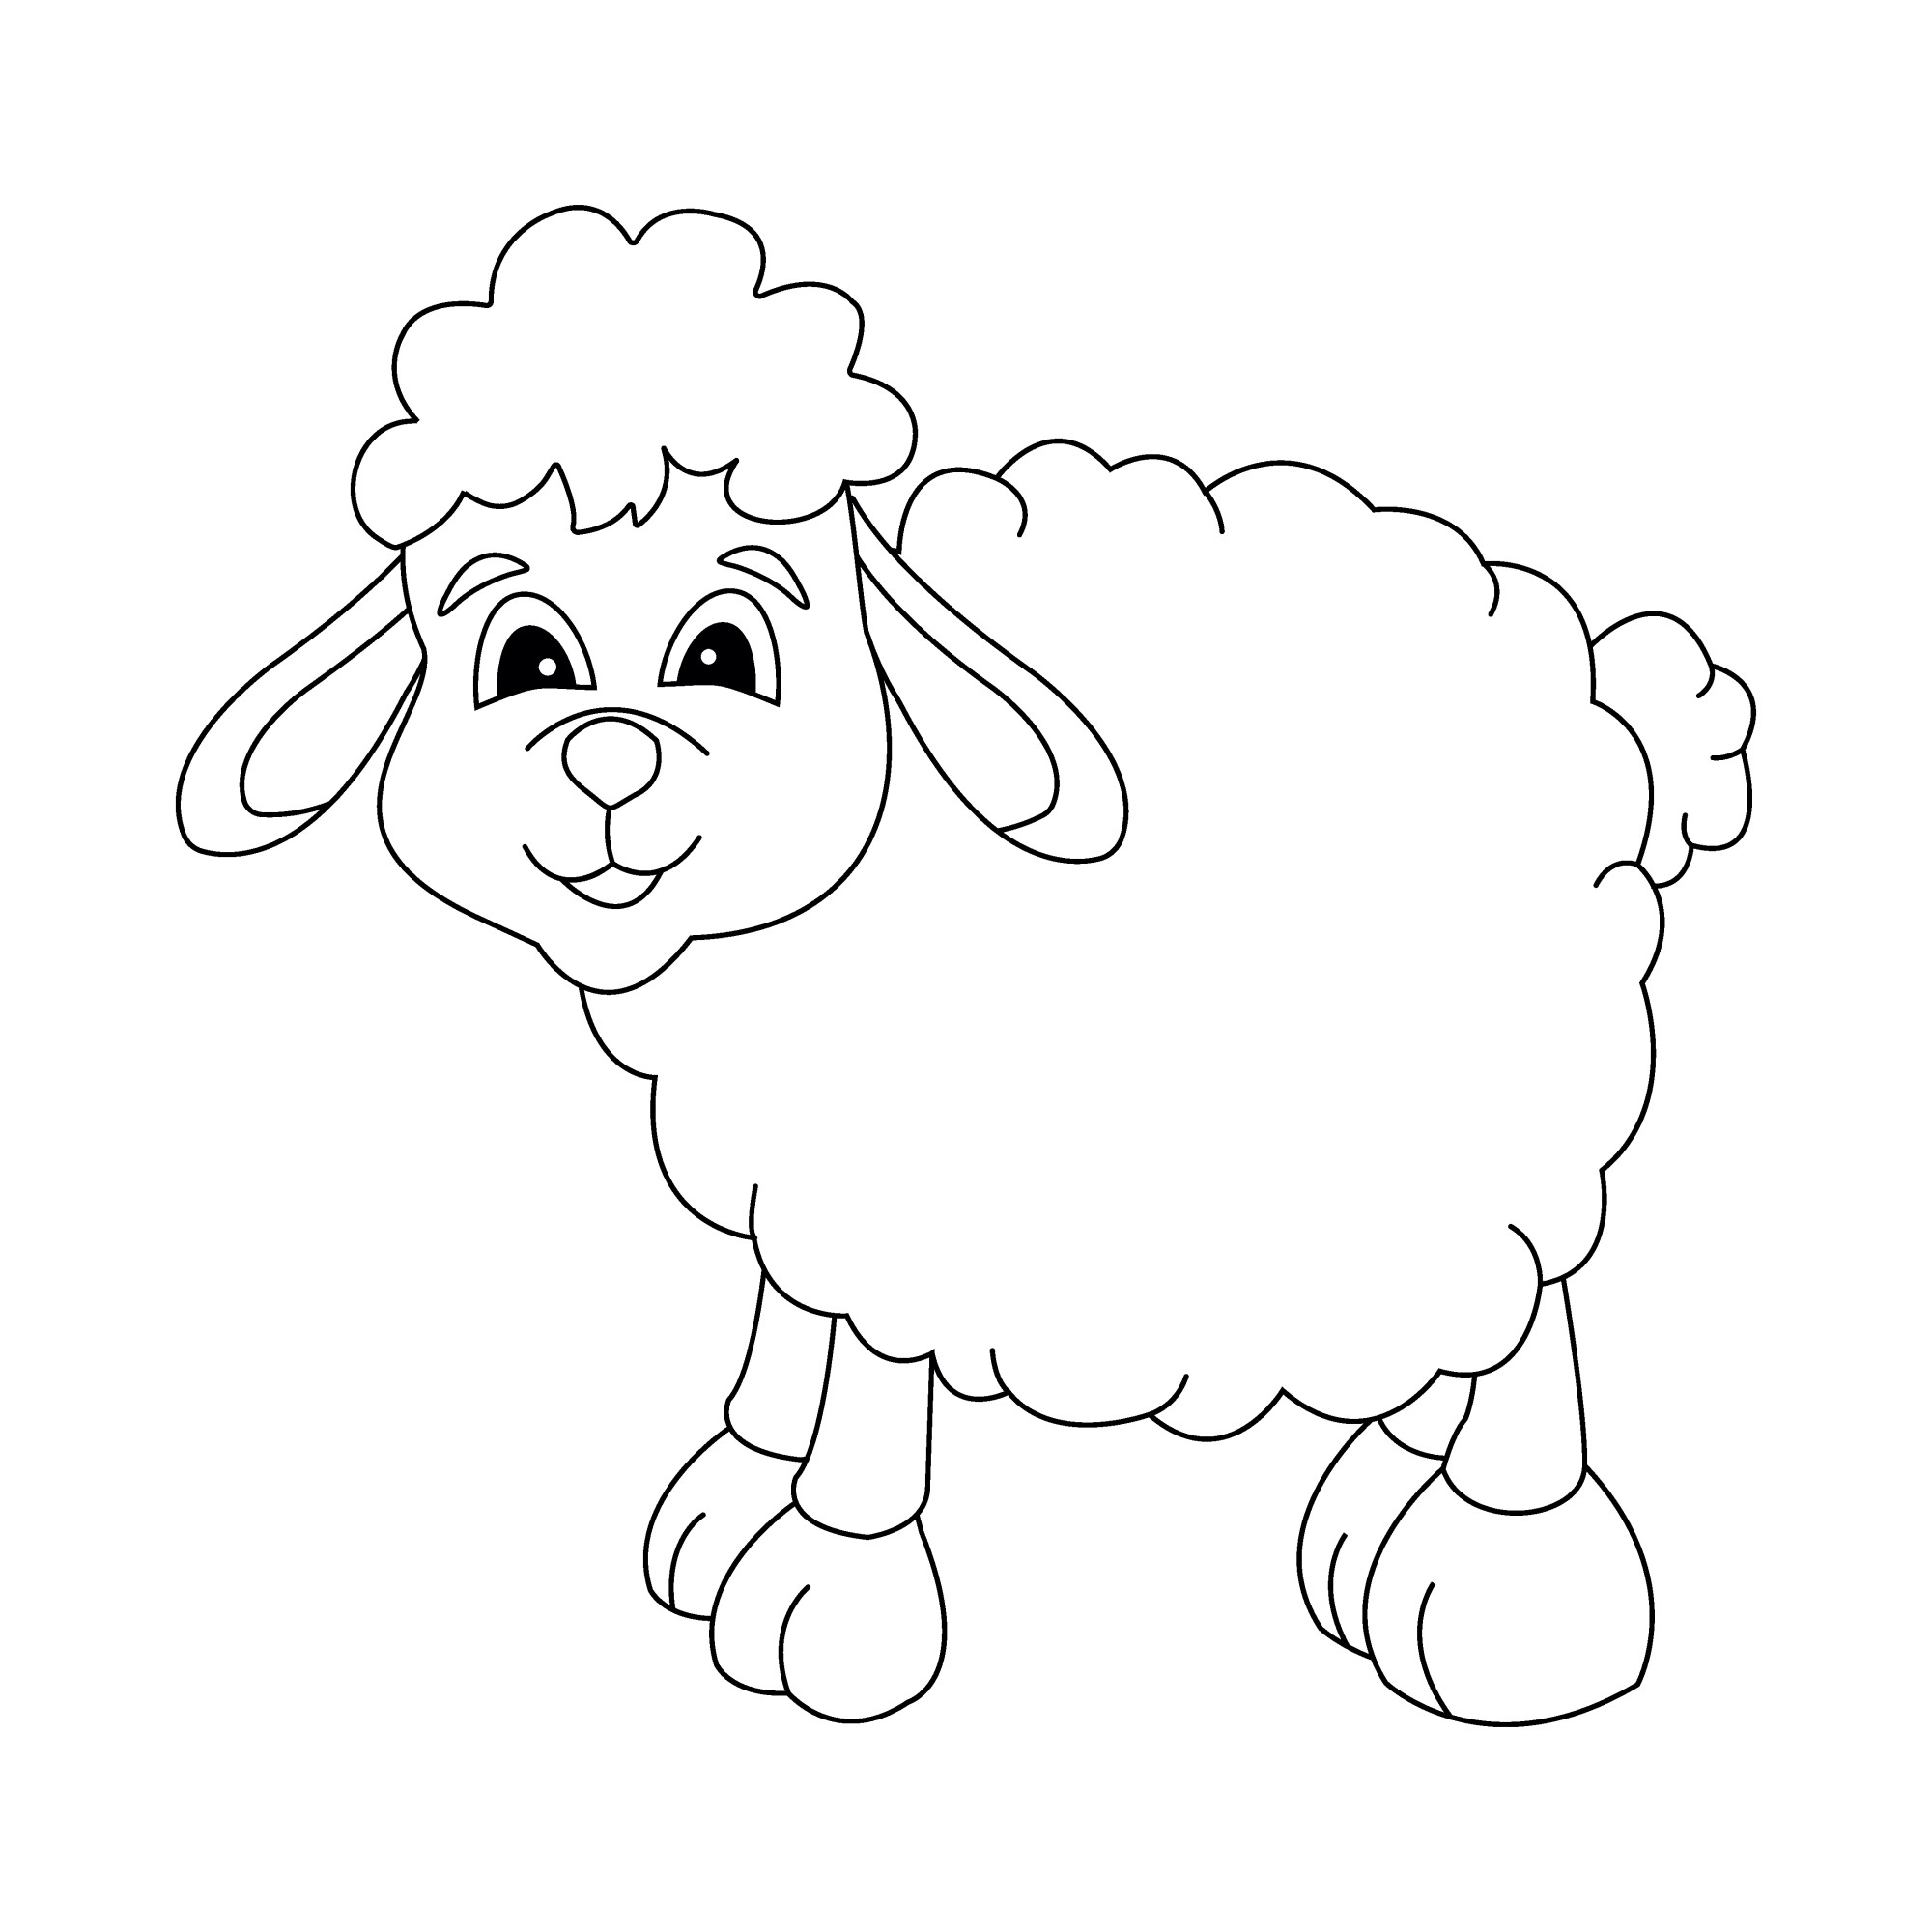 Раскраска для детей: овца с длинными ушами